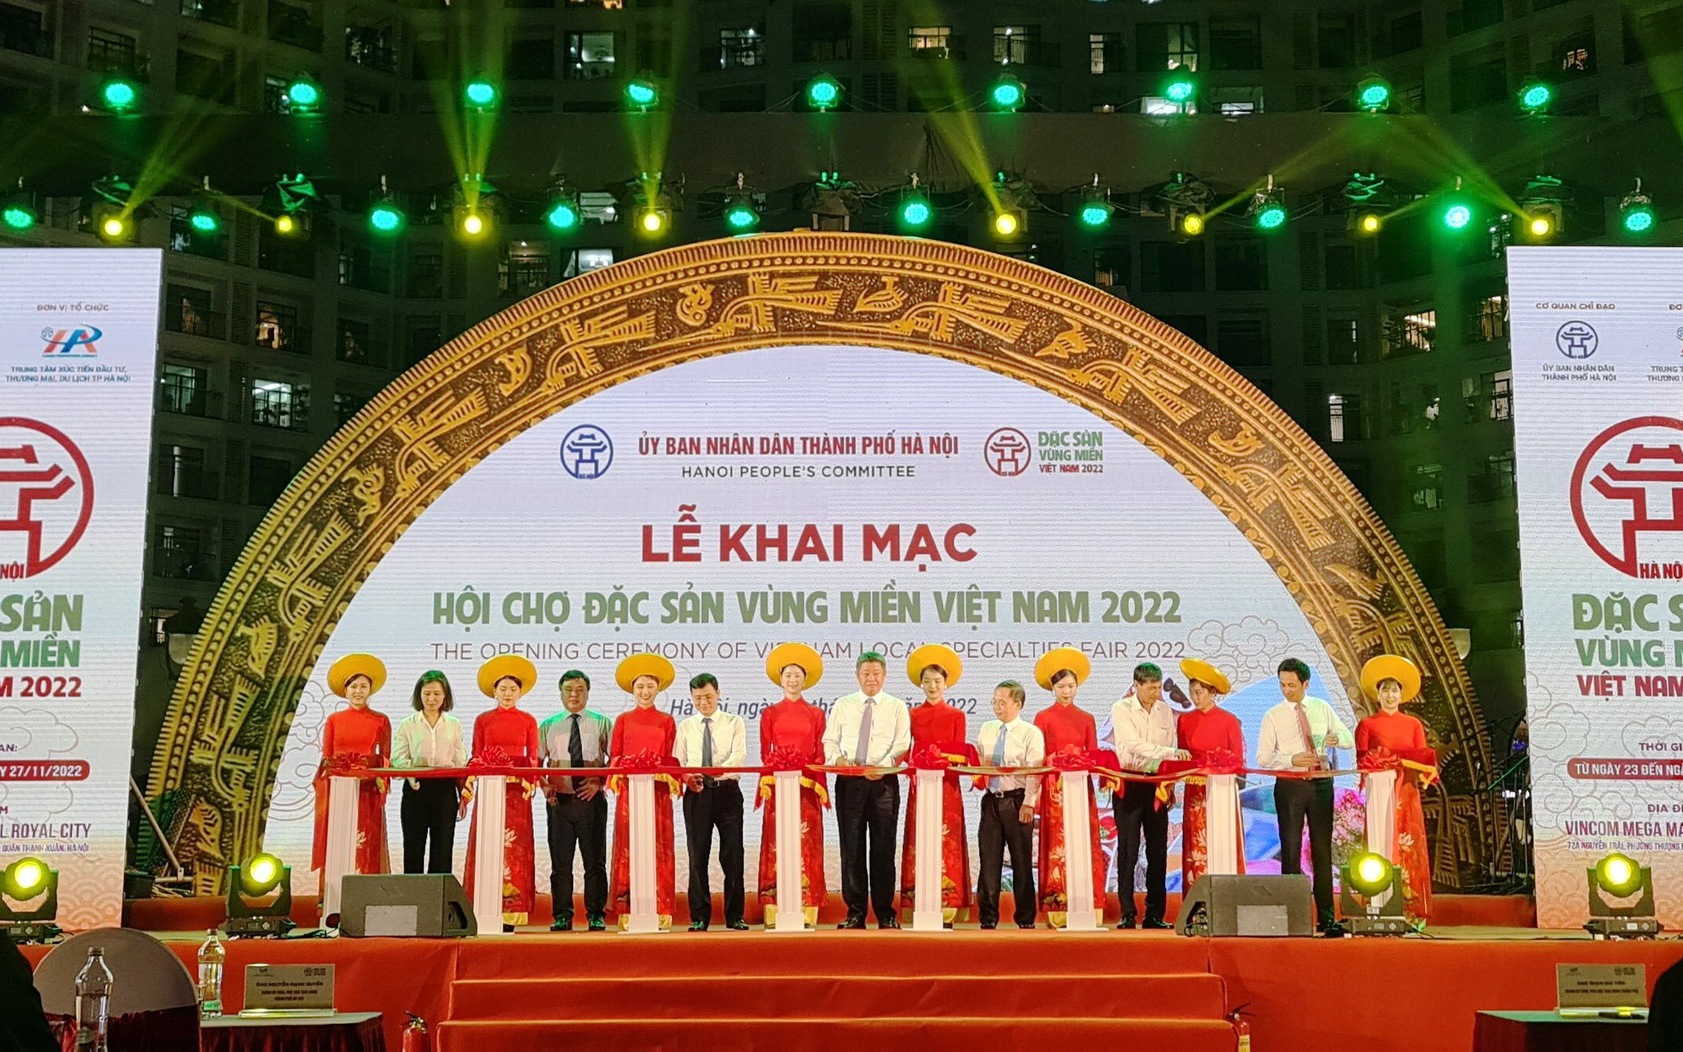 Khai mạc Hội chợ Đặc sản vùng miền Việt Nam 2022